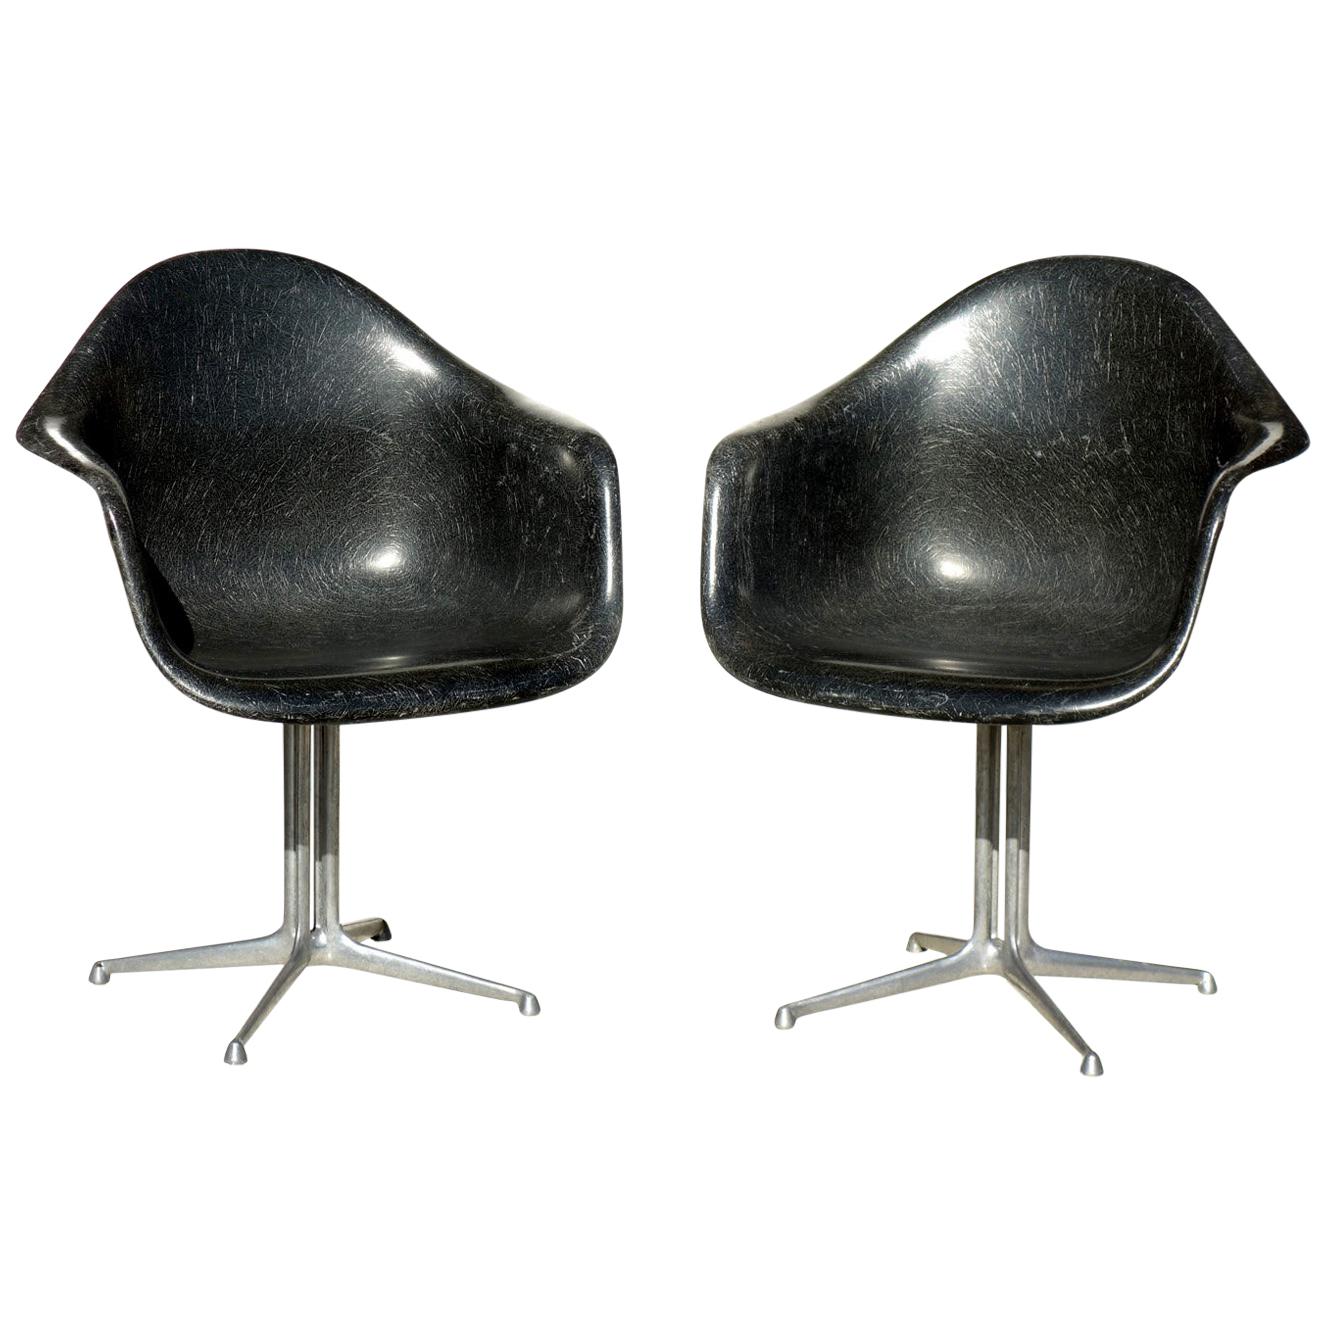 ""La Fonda"" C. Eames von H. Miller Space Age Design Zweier-Stuhl mit Glasfaserschale